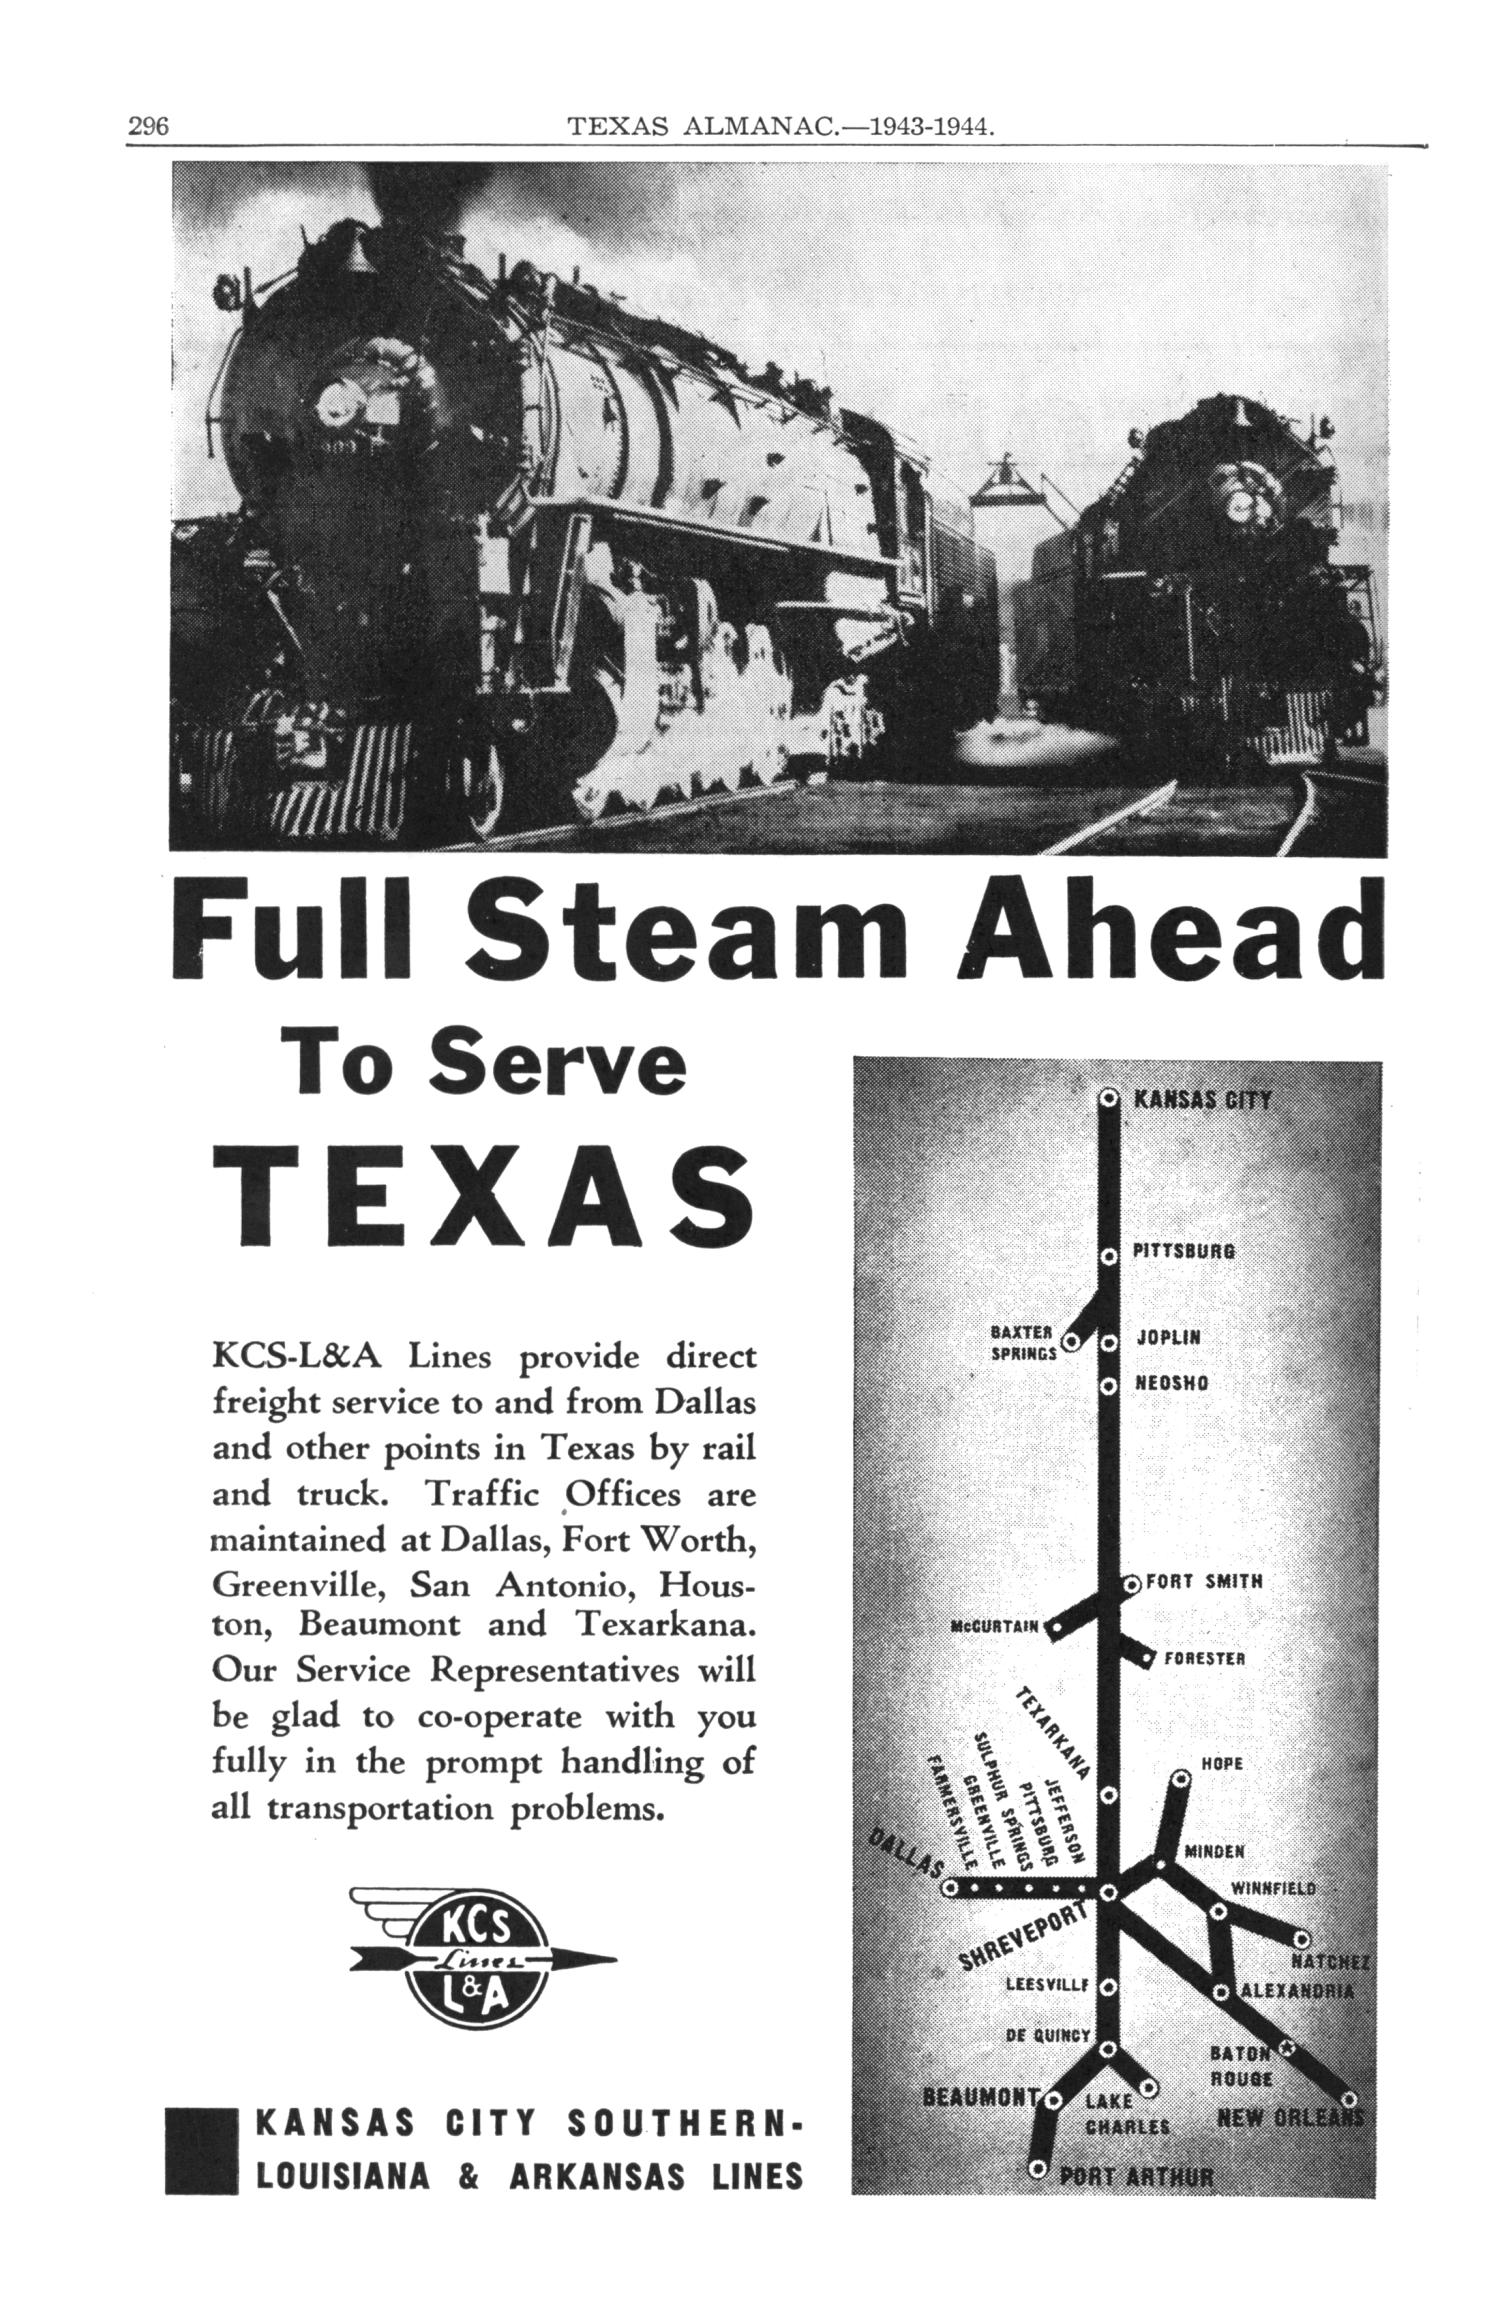 Texas Almanac, 1943-1944
                                                
                                                    296
                                                